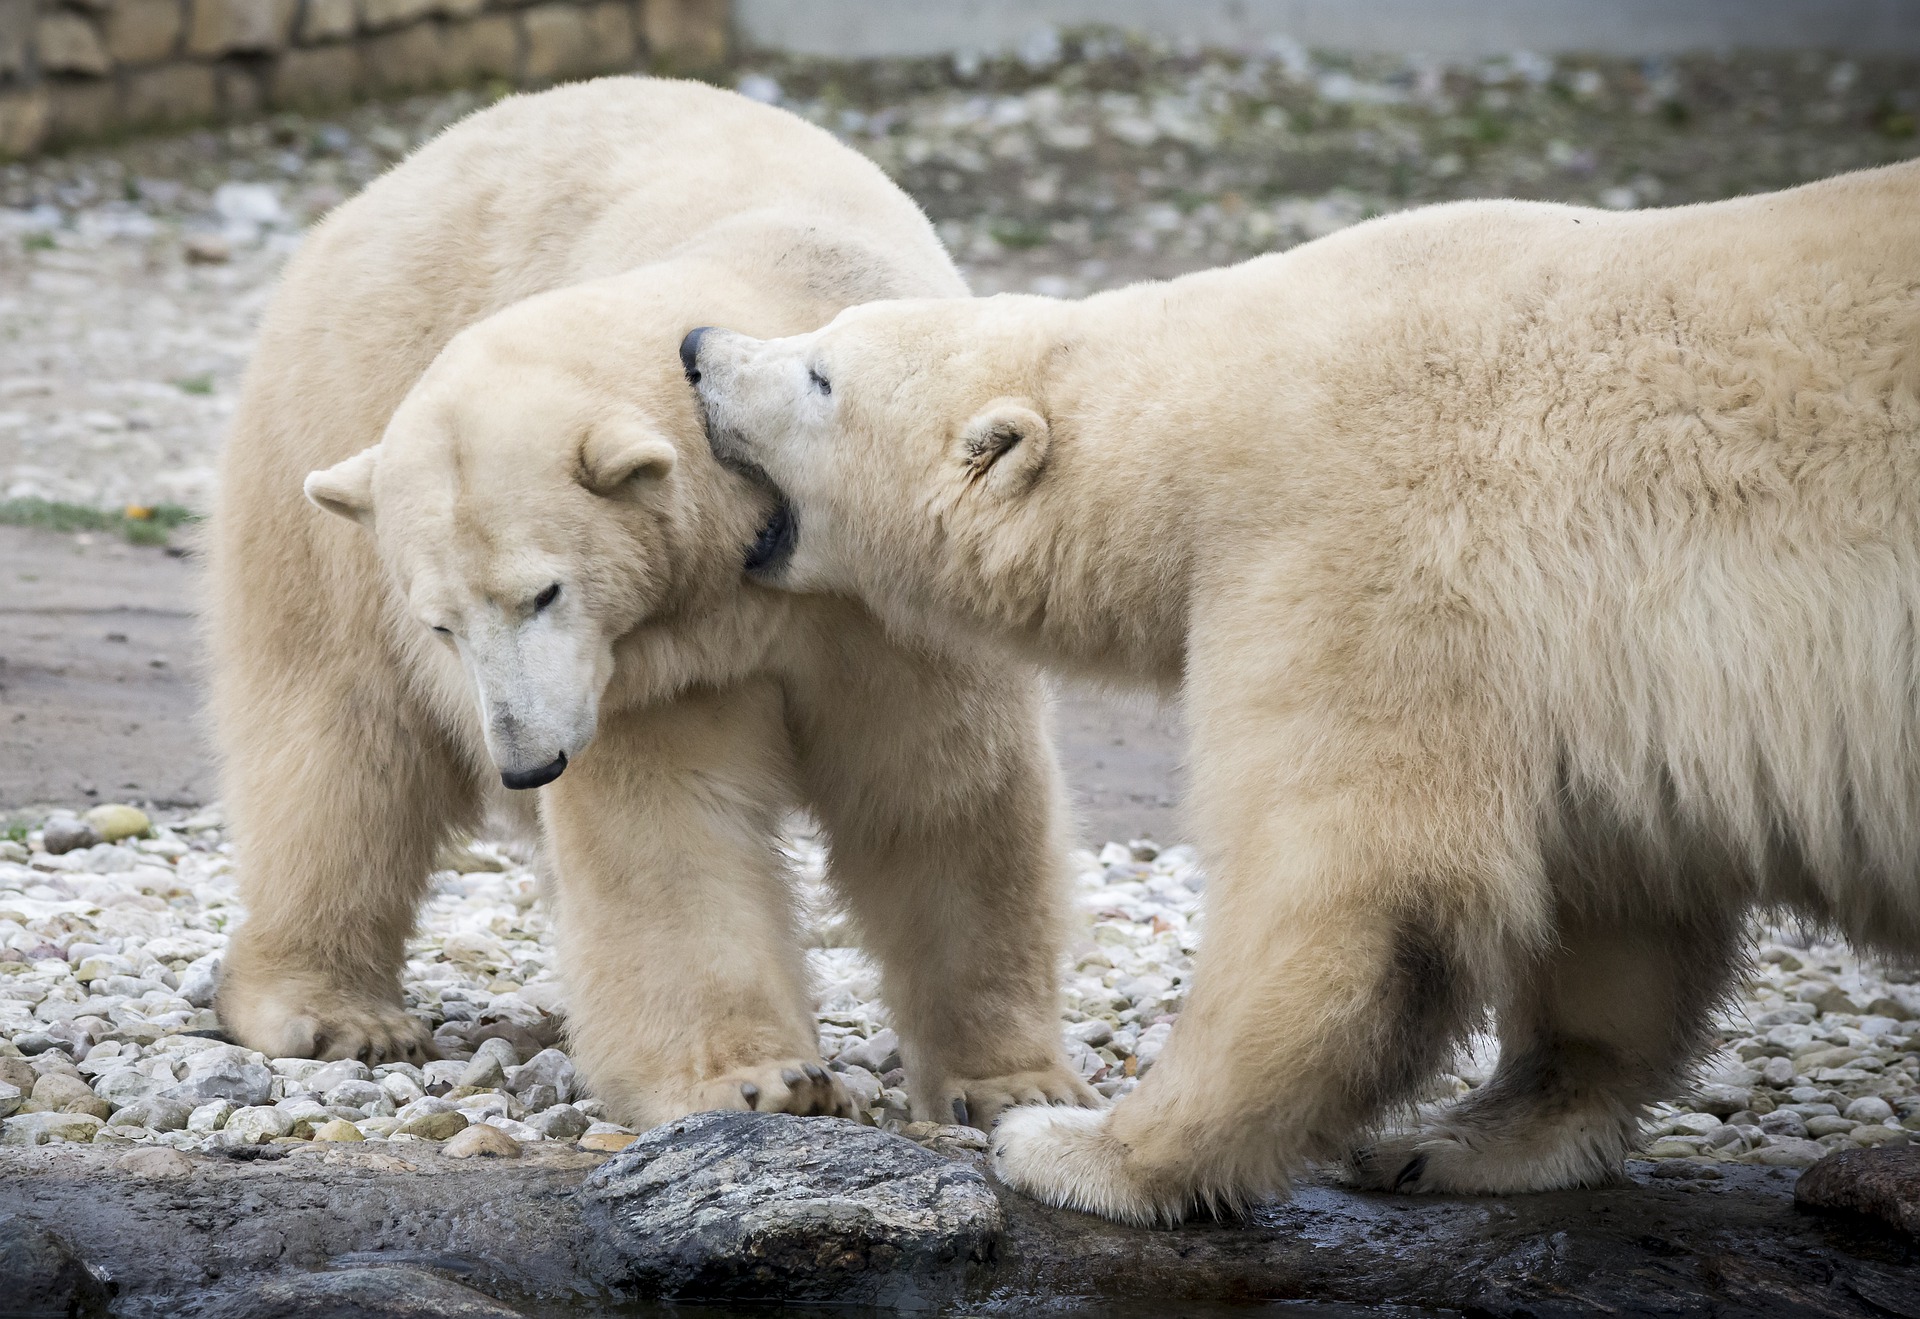 Арктика сегодня: микроорганизмы против загрязнения, чистая вода для Архангельска и медвежье здоровье